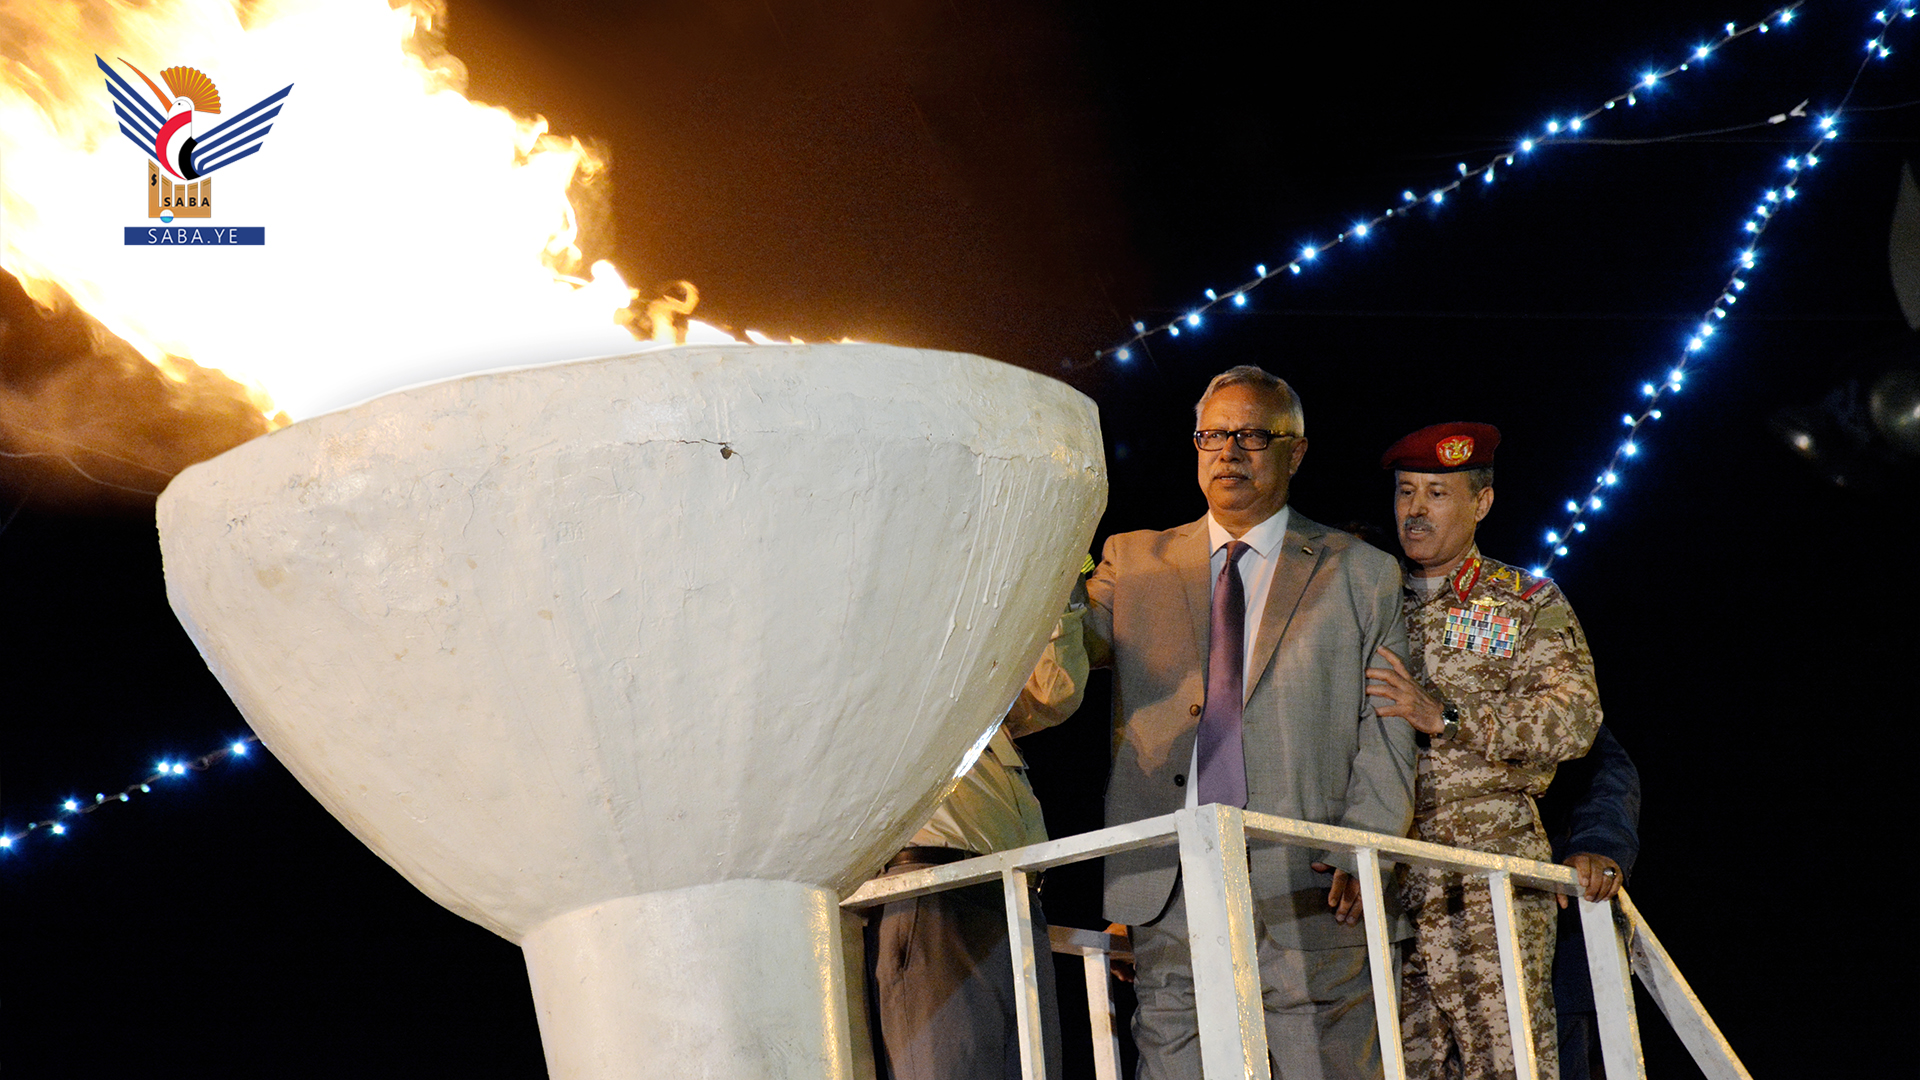 El Primer Ministro presencia la ceremonia de encendido de la llama de la revolución.